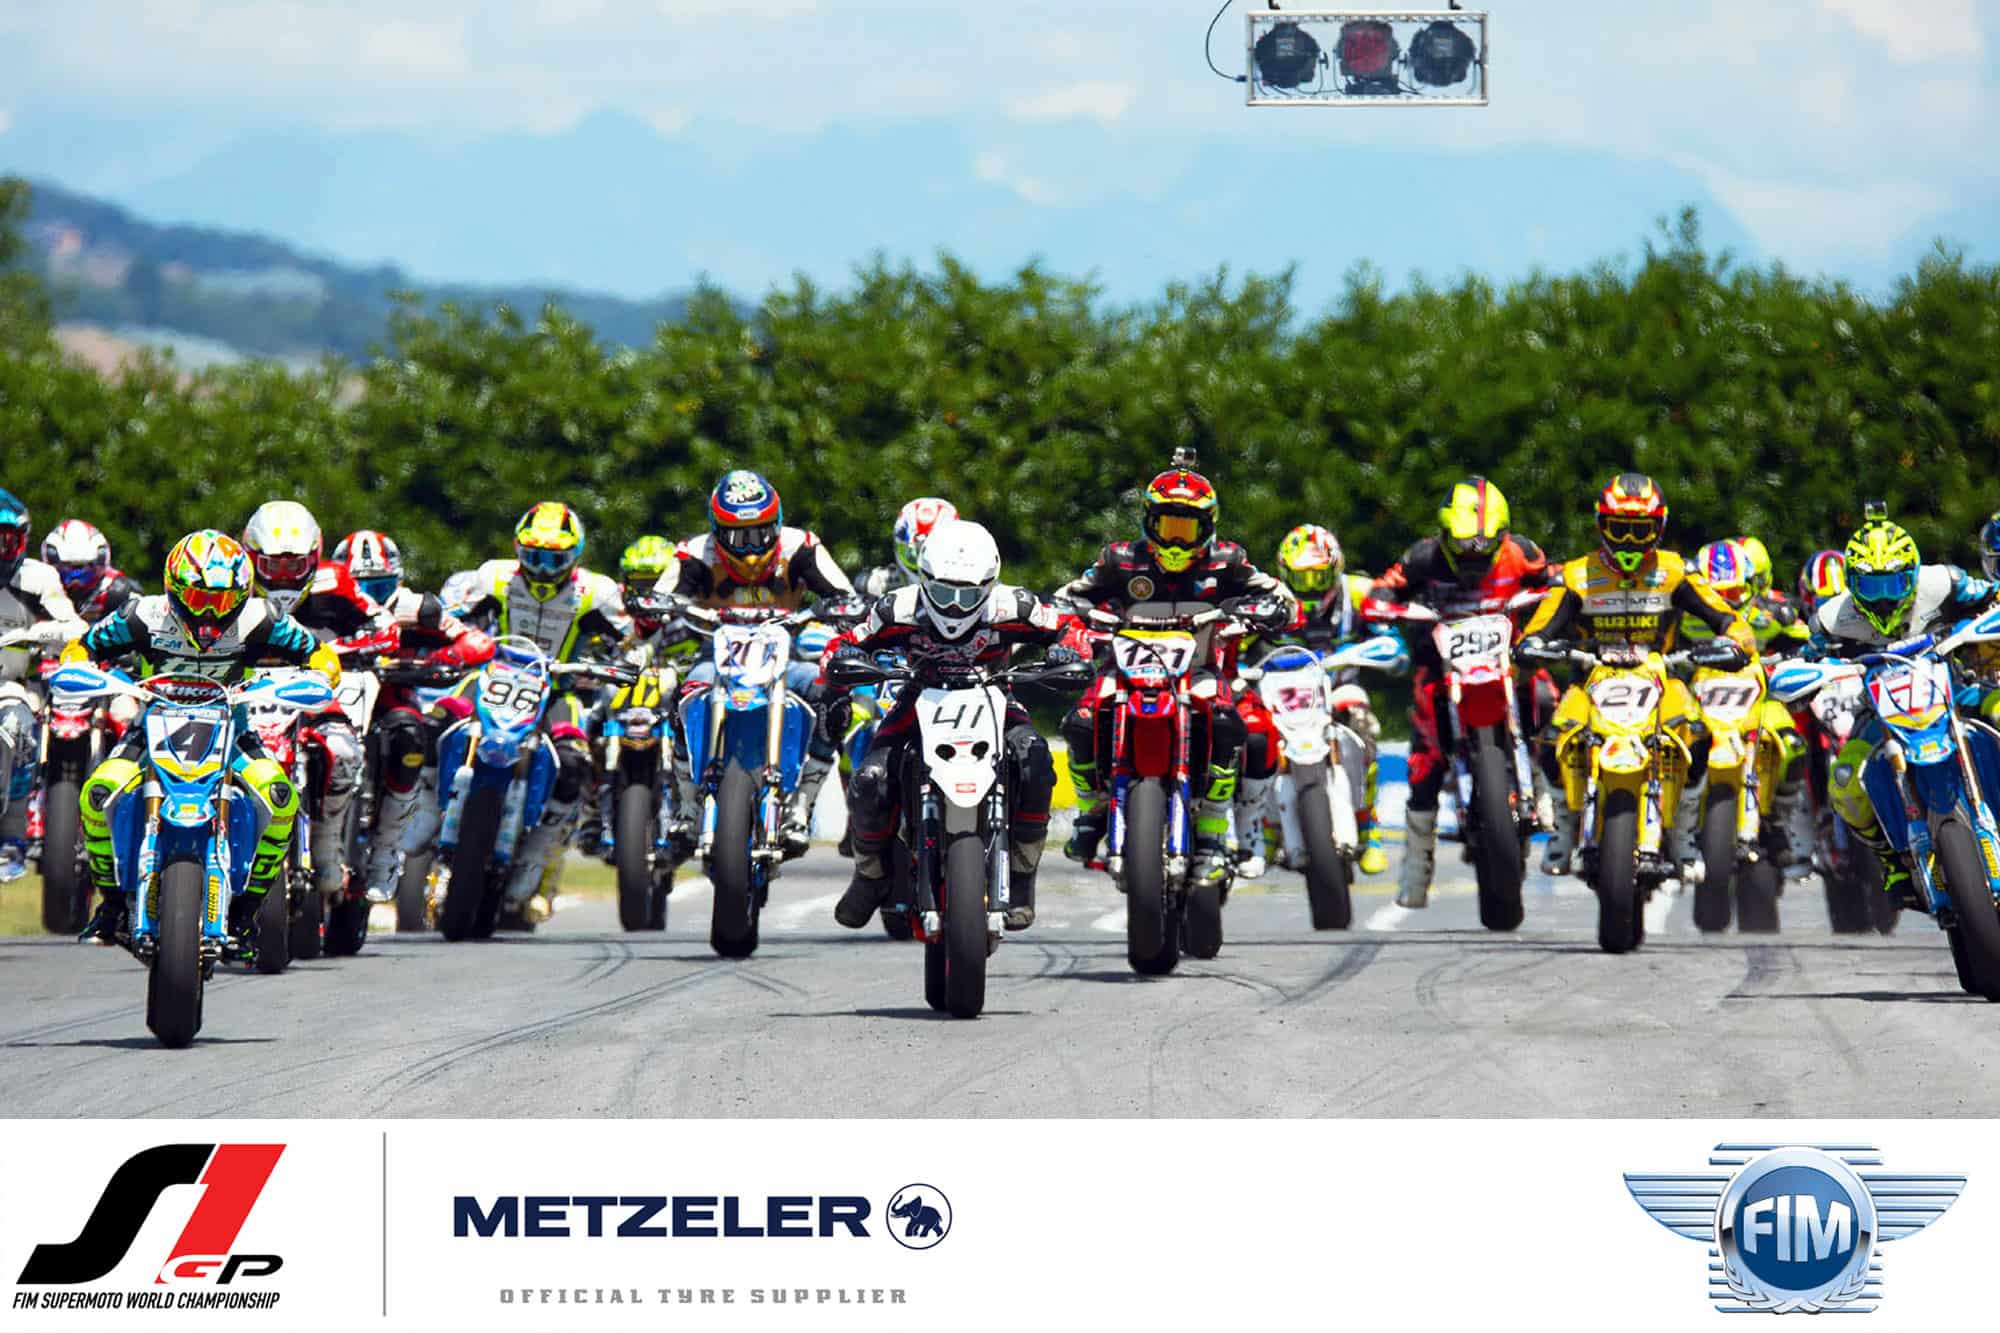 Metzeler proveedor oficial de todos los campeonatos Supermoto FIM